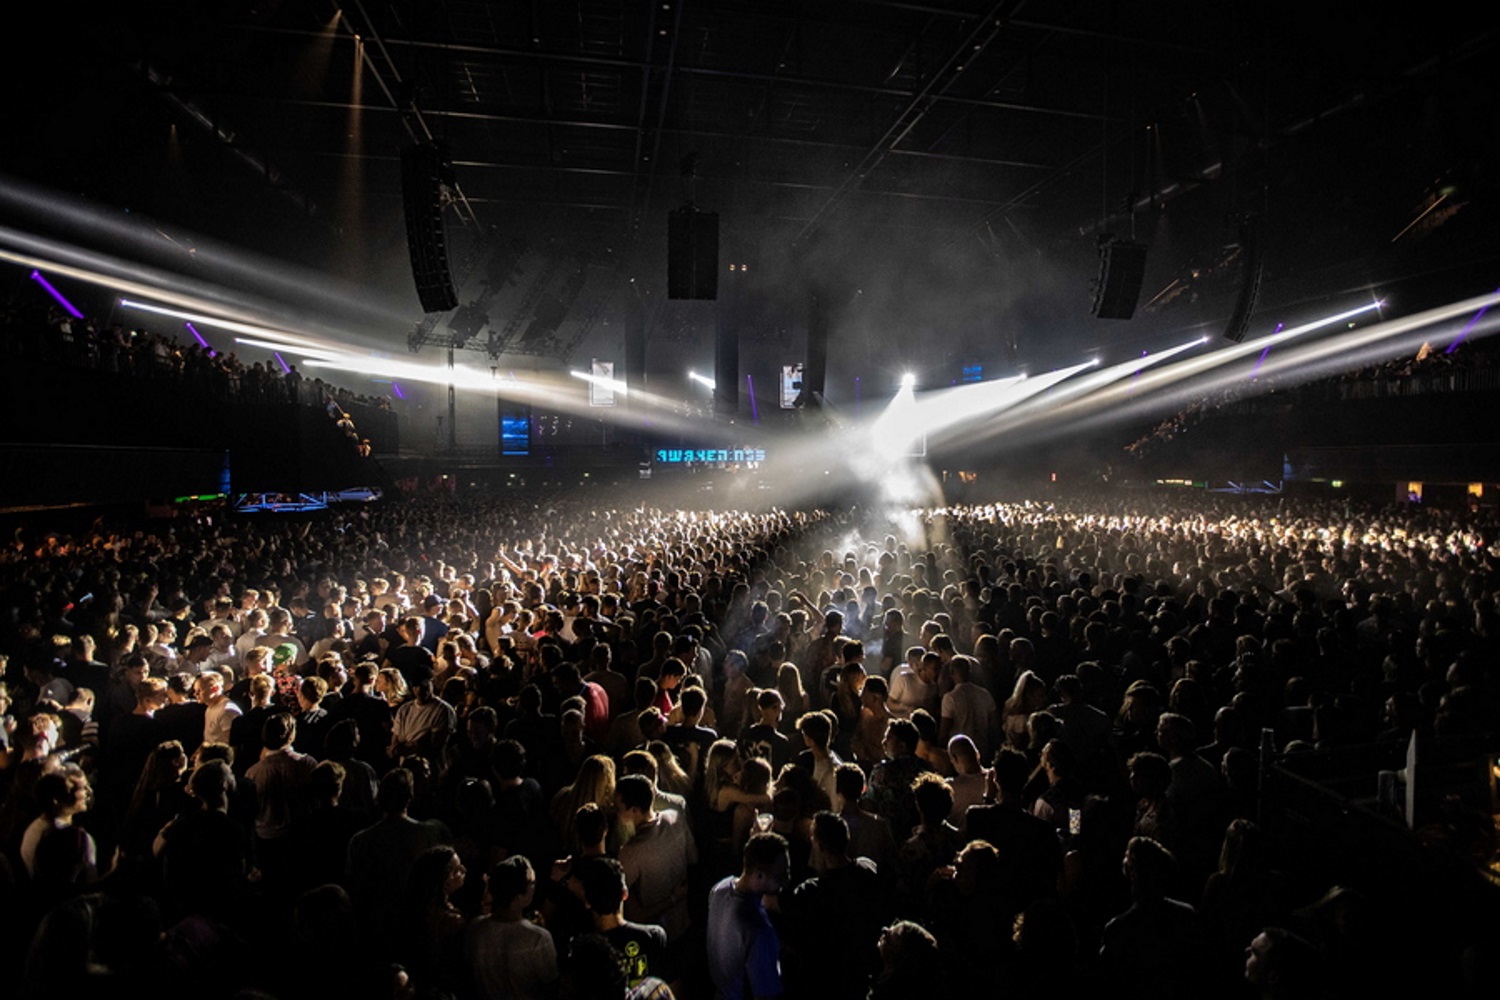 Δανία: Θετικός στη μετάλλαξη Όμικρον άνθρωπος που βρέθηκε σε συναυλία με 1.600 άτομα